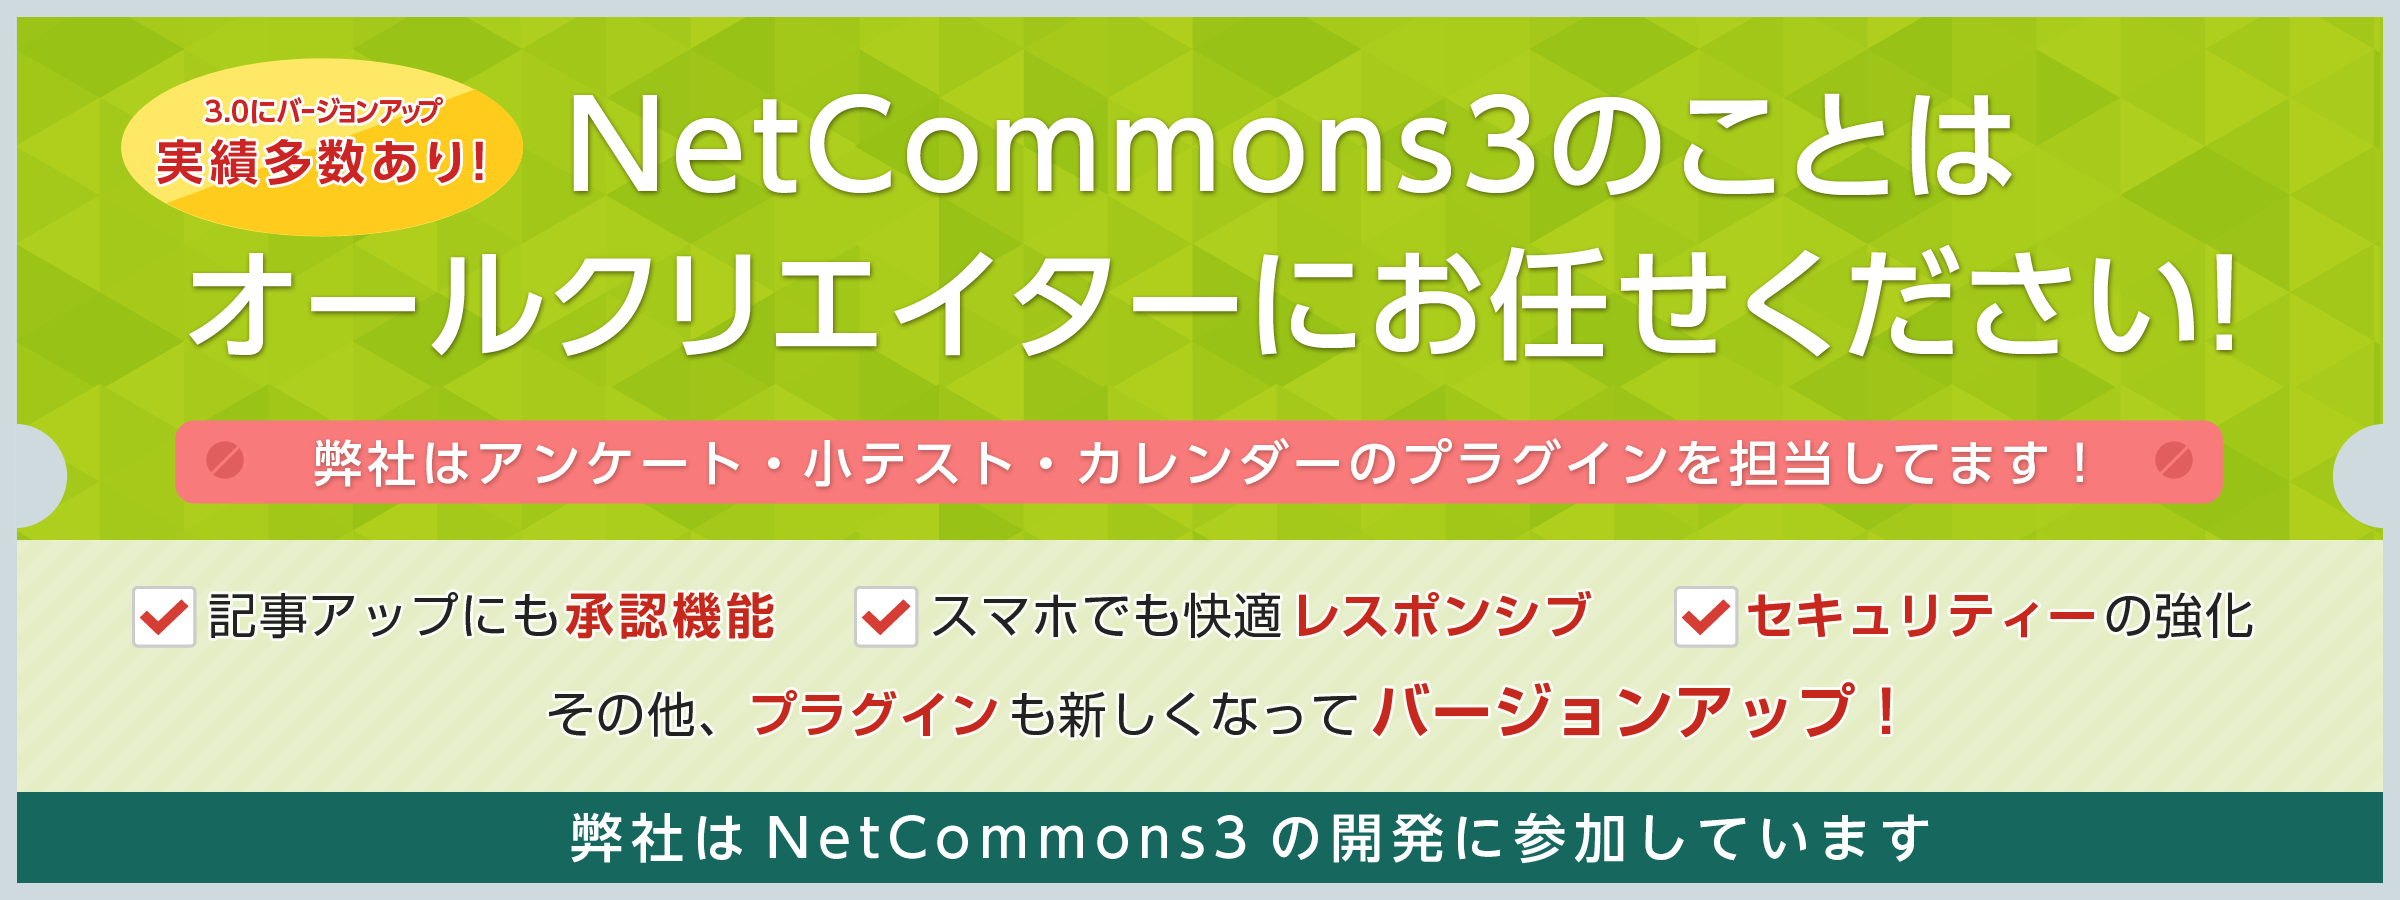 NetCommons3のことはオールクリエイターにお任せください